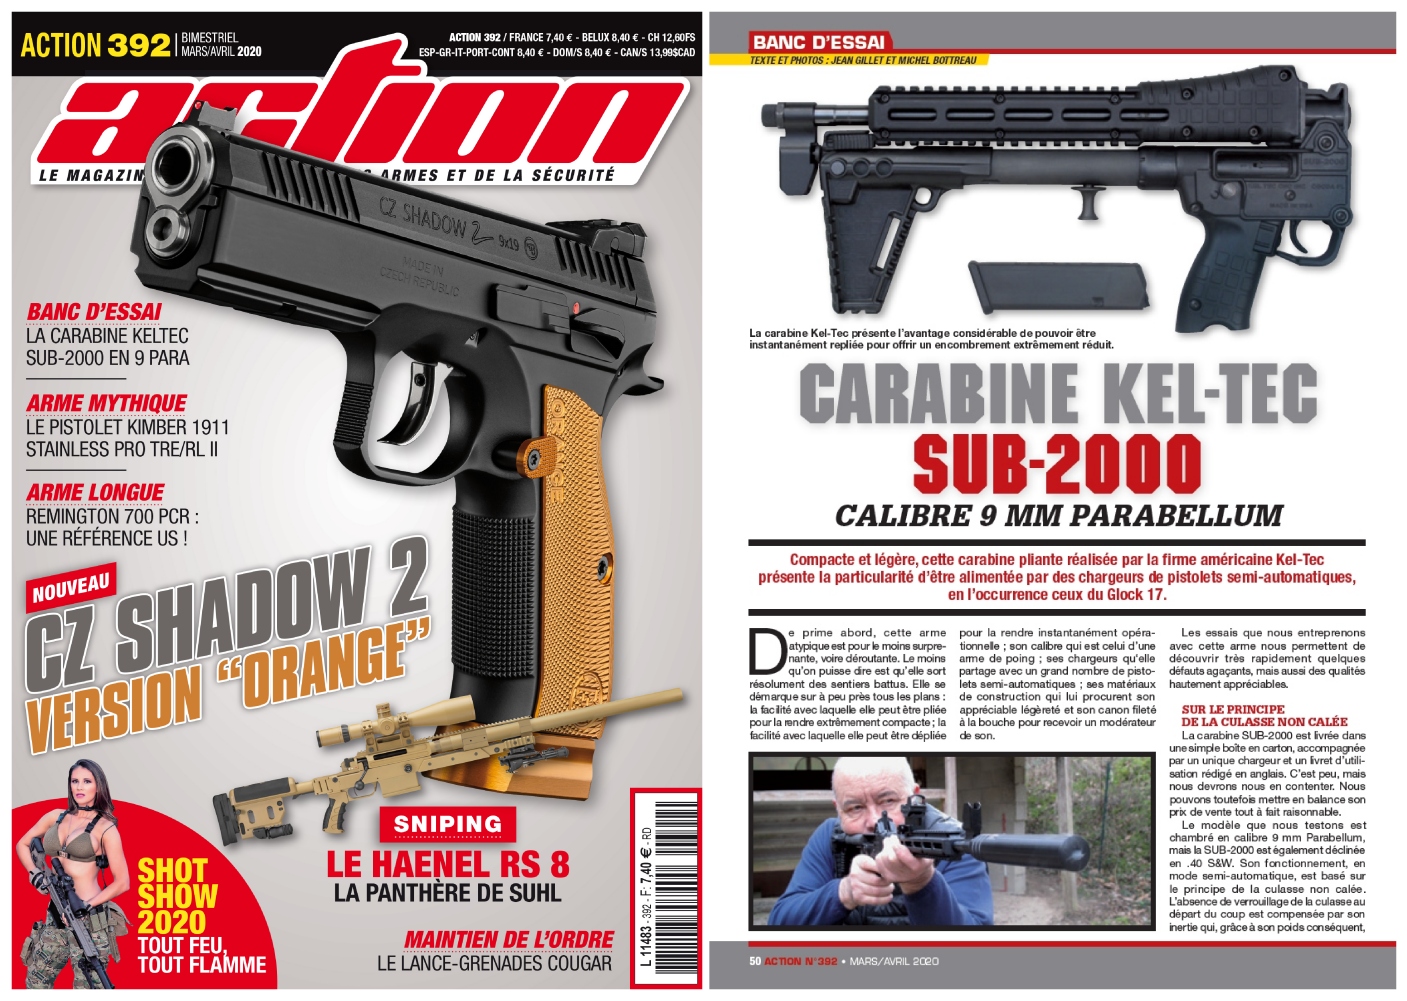 Le banc d’essai de la carabine KEL-TEC SUB-2000 a été publié sur 5 pages dans le magazine Action n°392 (mars-avril 2020). 